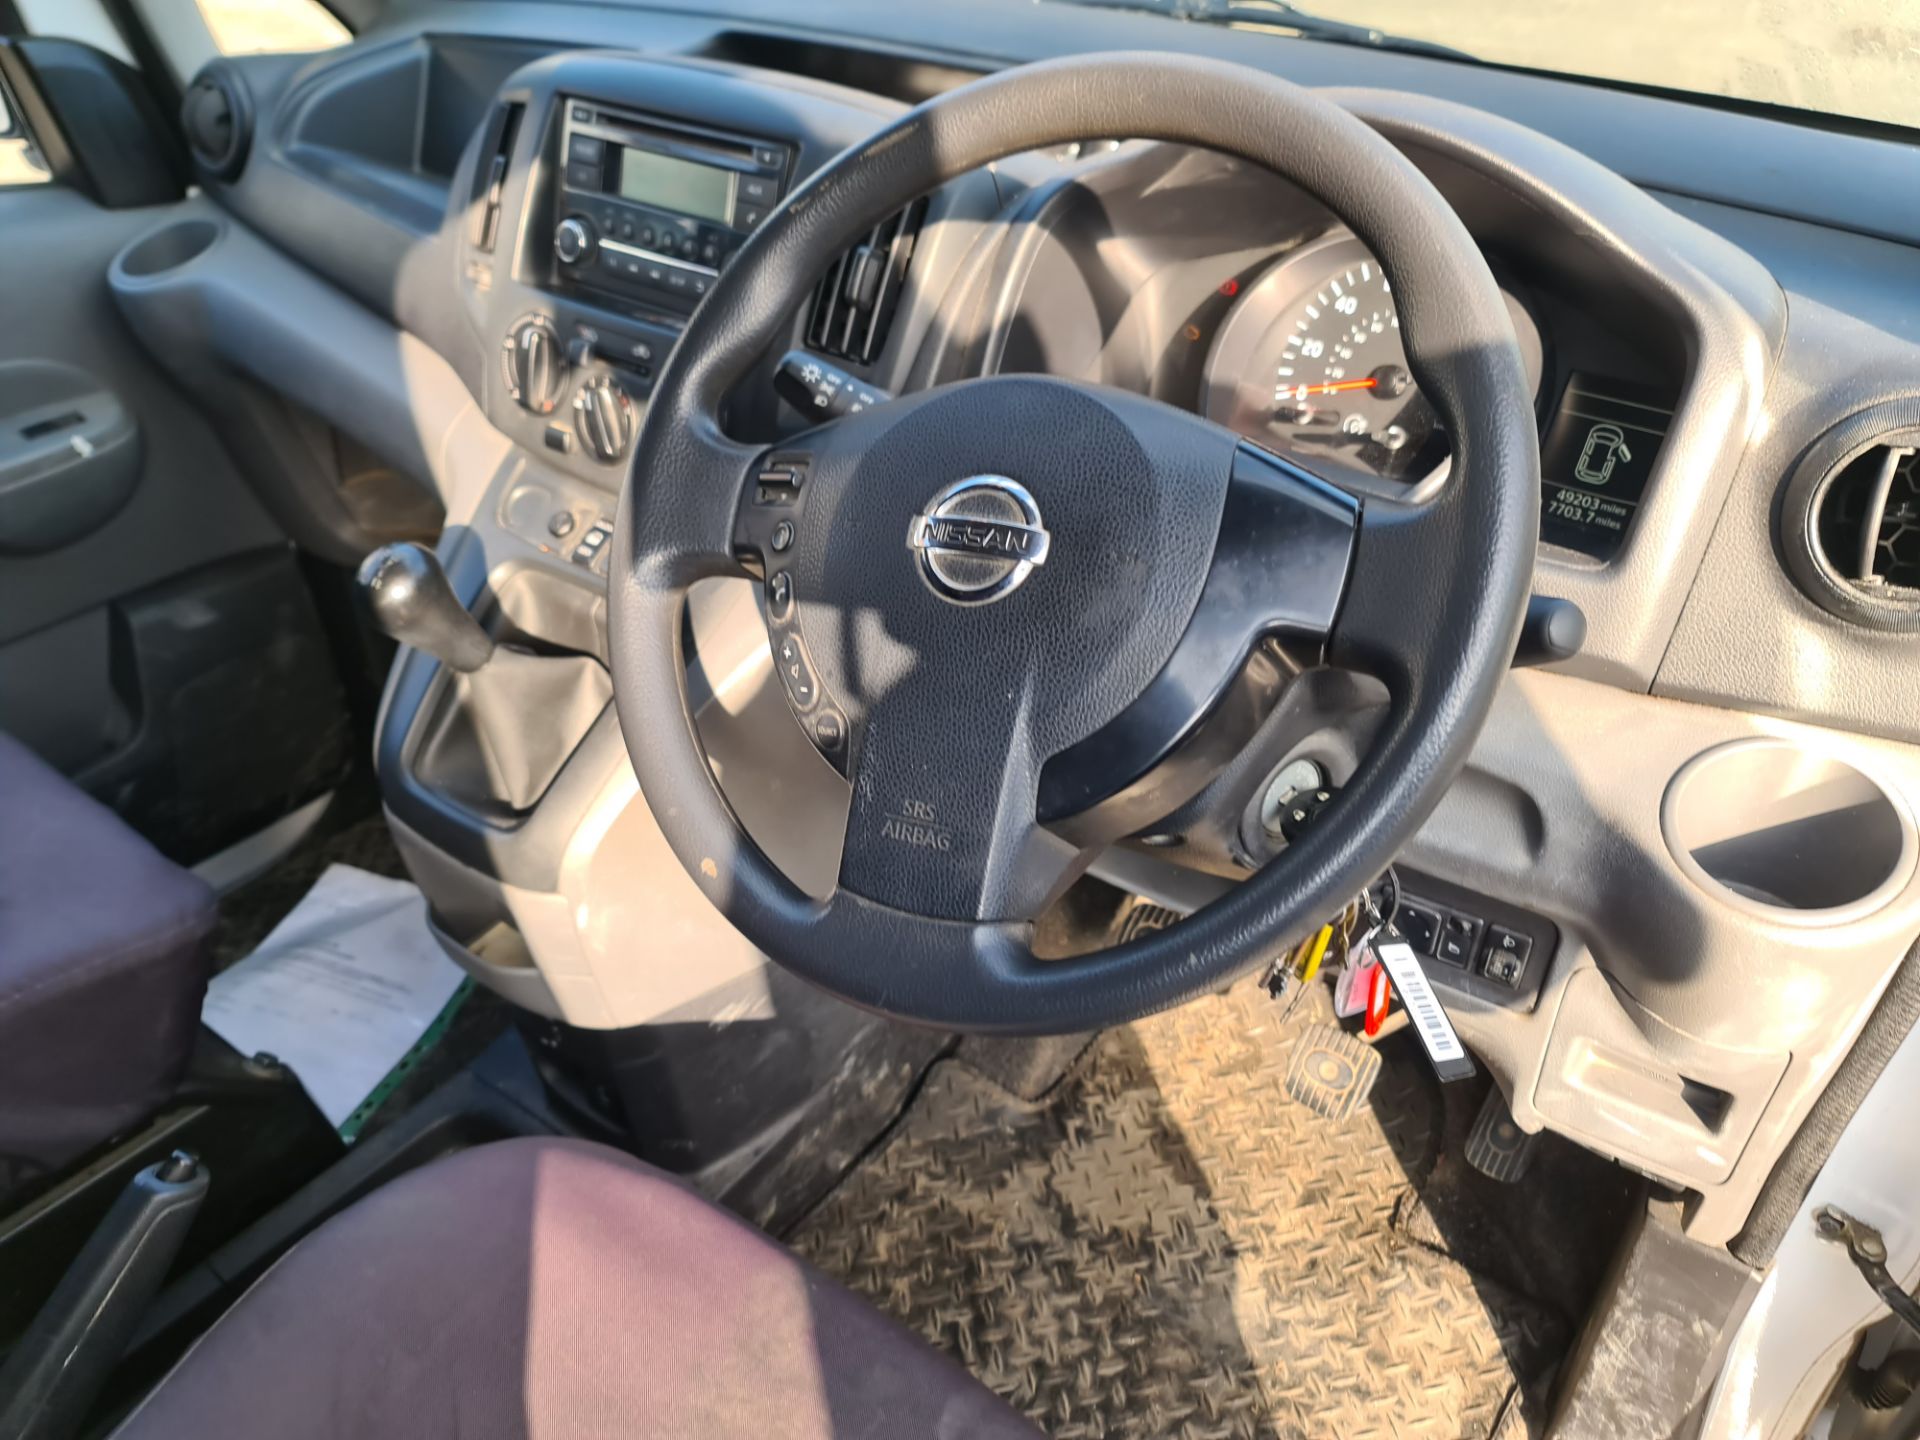 2018 Nissan NV200 Acenta DCI car derived van - Image 23 of 93